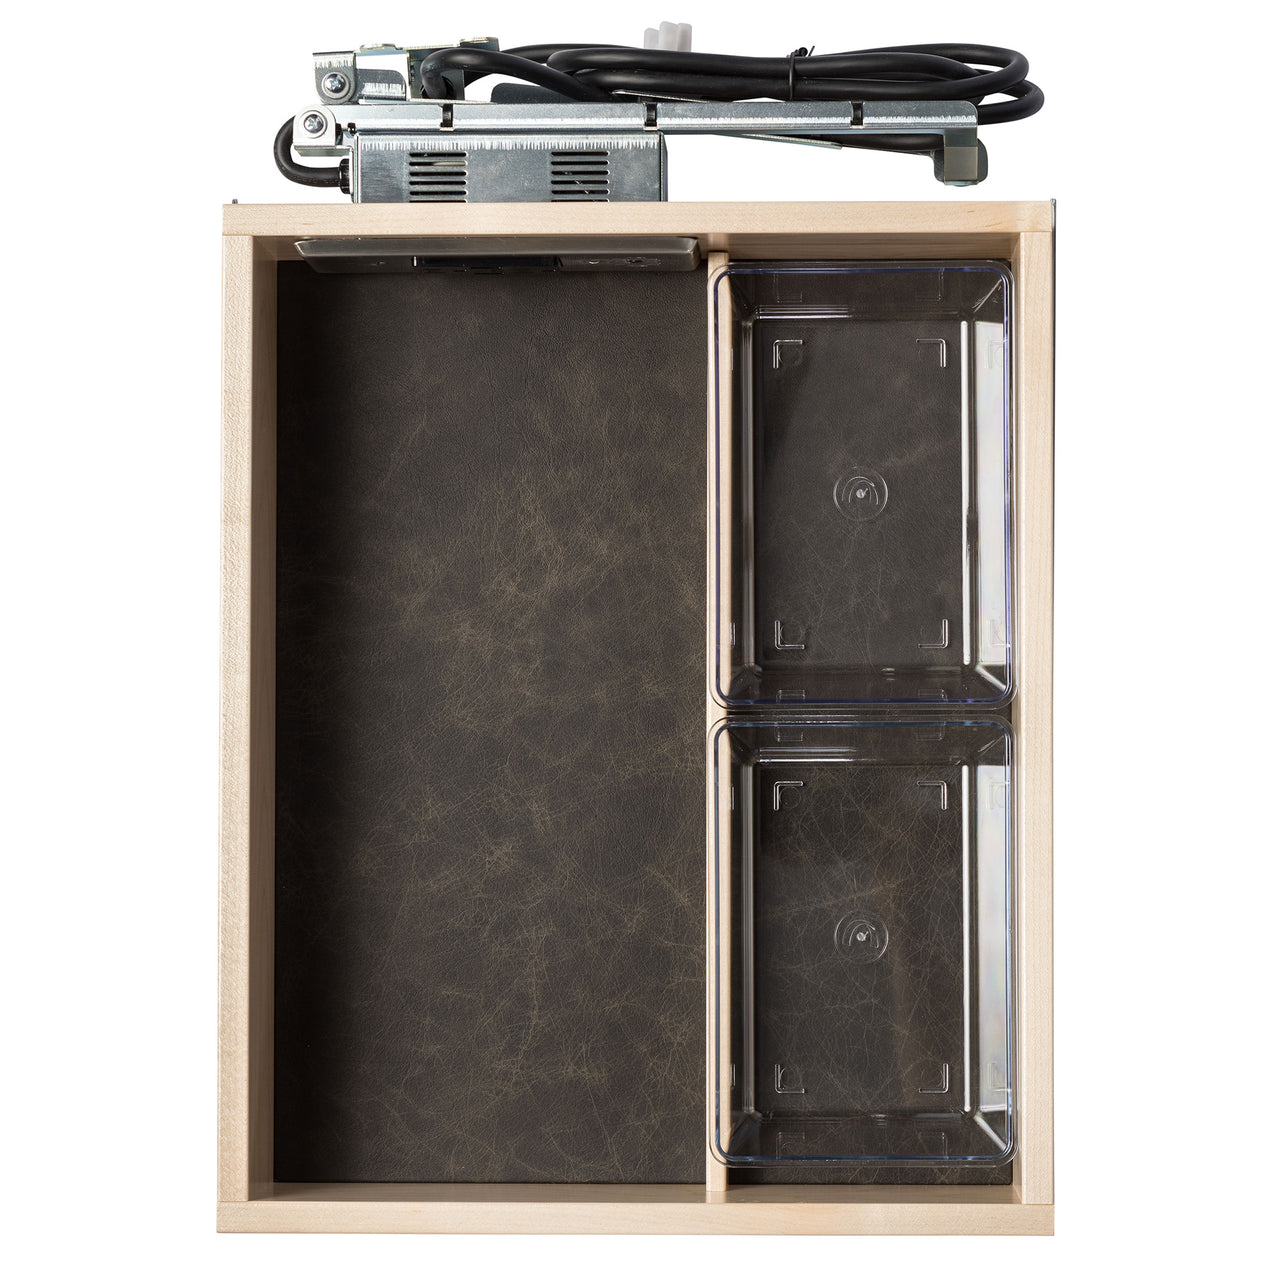 Preconfigured Vanity Drawer for Framed Cabinets